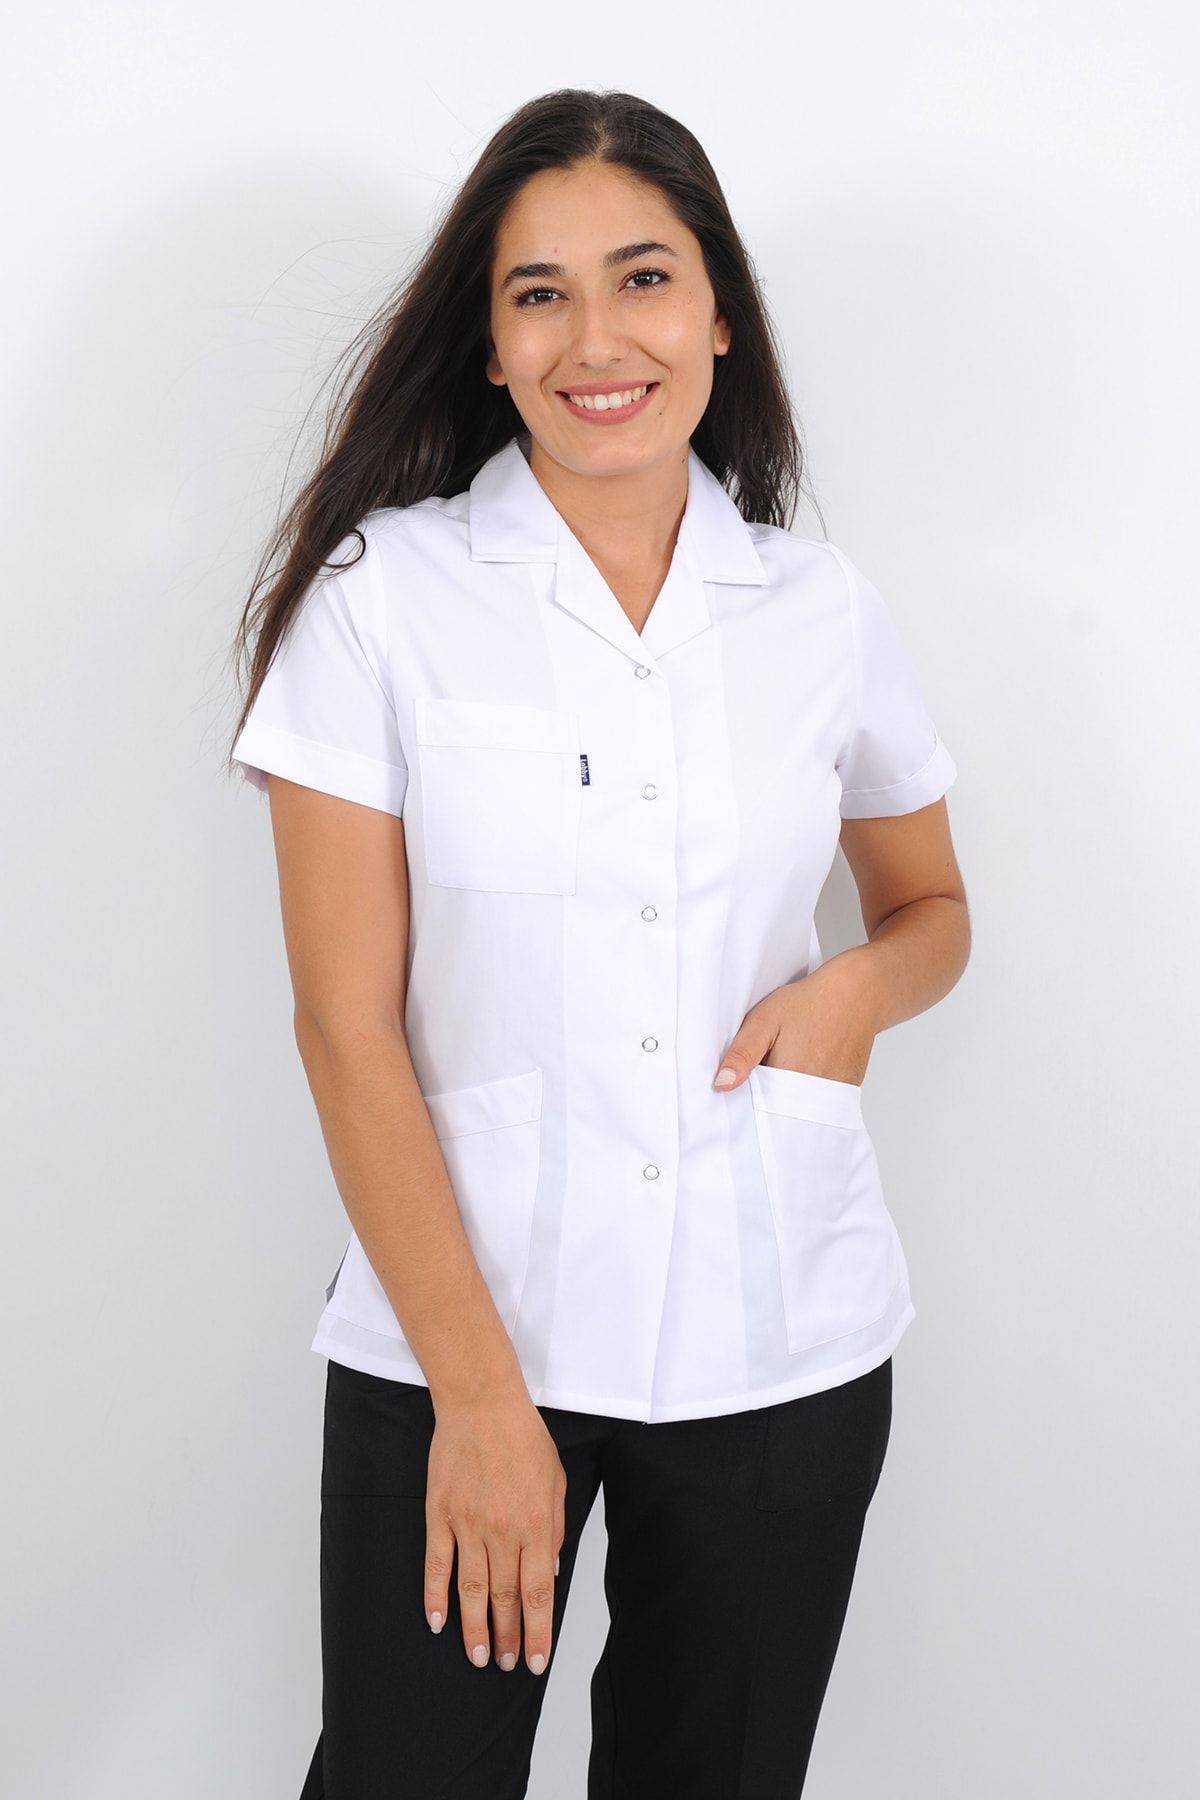 Lobby Uniform Kadın Kısa Kollu Beyaz Alpaka Kumaş Doktor Hemşire Eczacı Laborant Veteriner Öğretmen Önlüğü